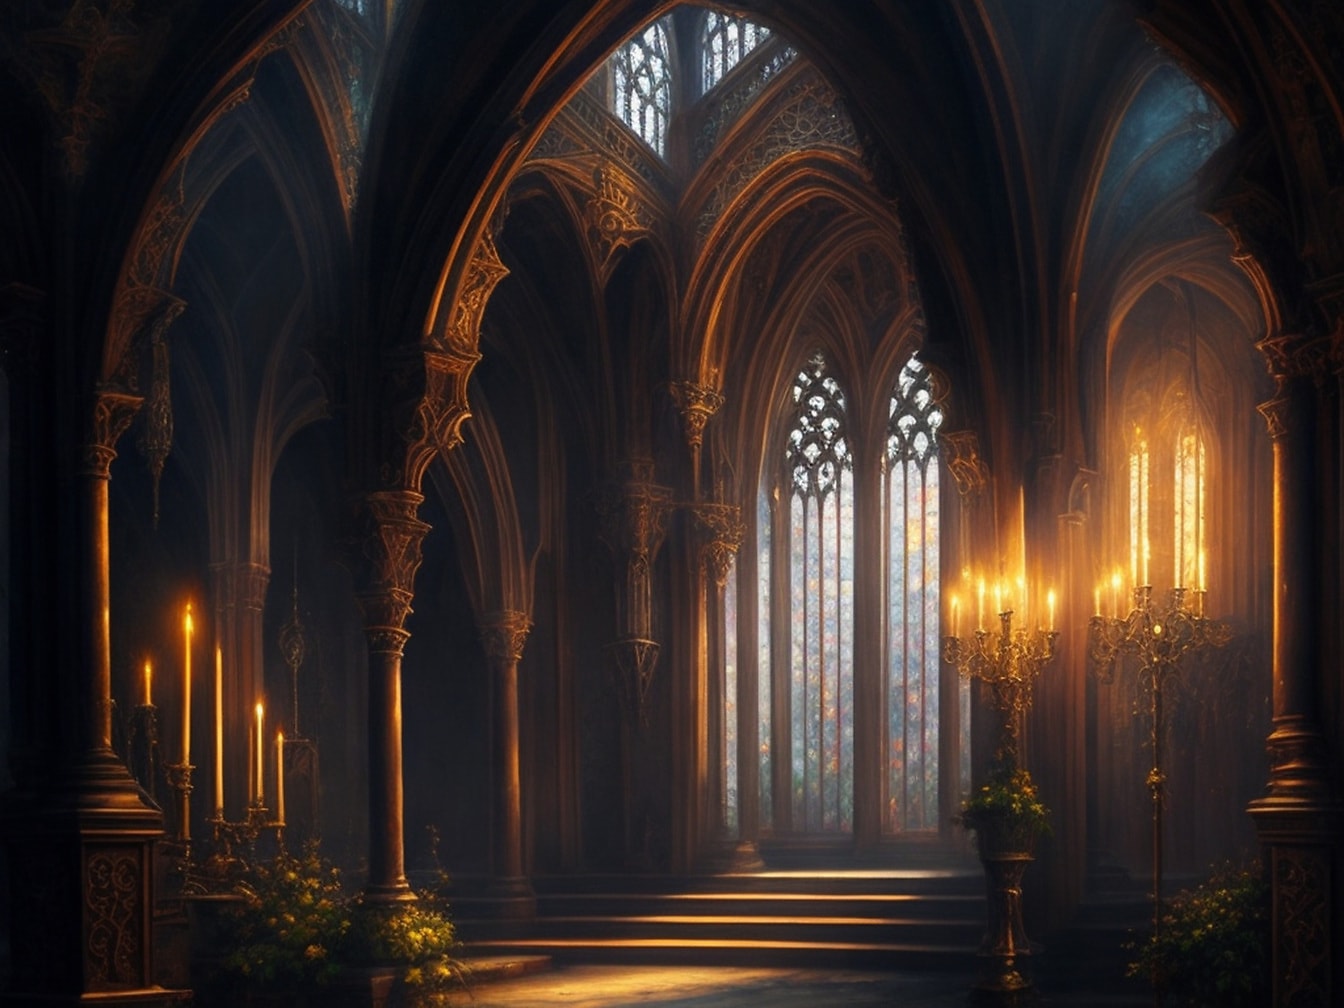 Interno della cattedrale gotica con illustrazione a lume di candela